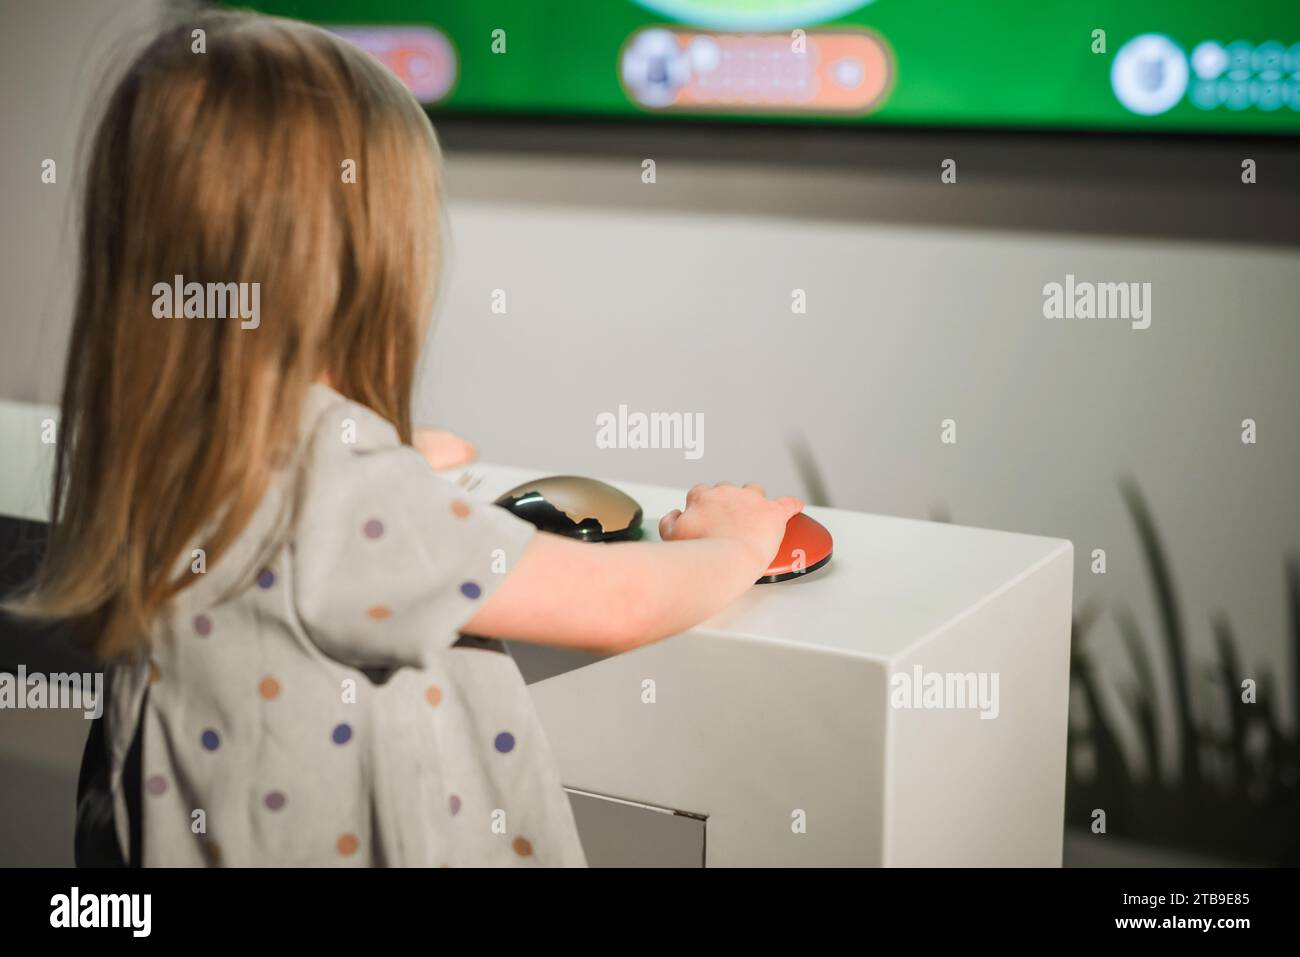 Ein kleines Mädchen, das auf einen großen Fernsehbildschirm mit interaktiven Inhalten blickt und ein Wissensspiel spielt. Stockfoto